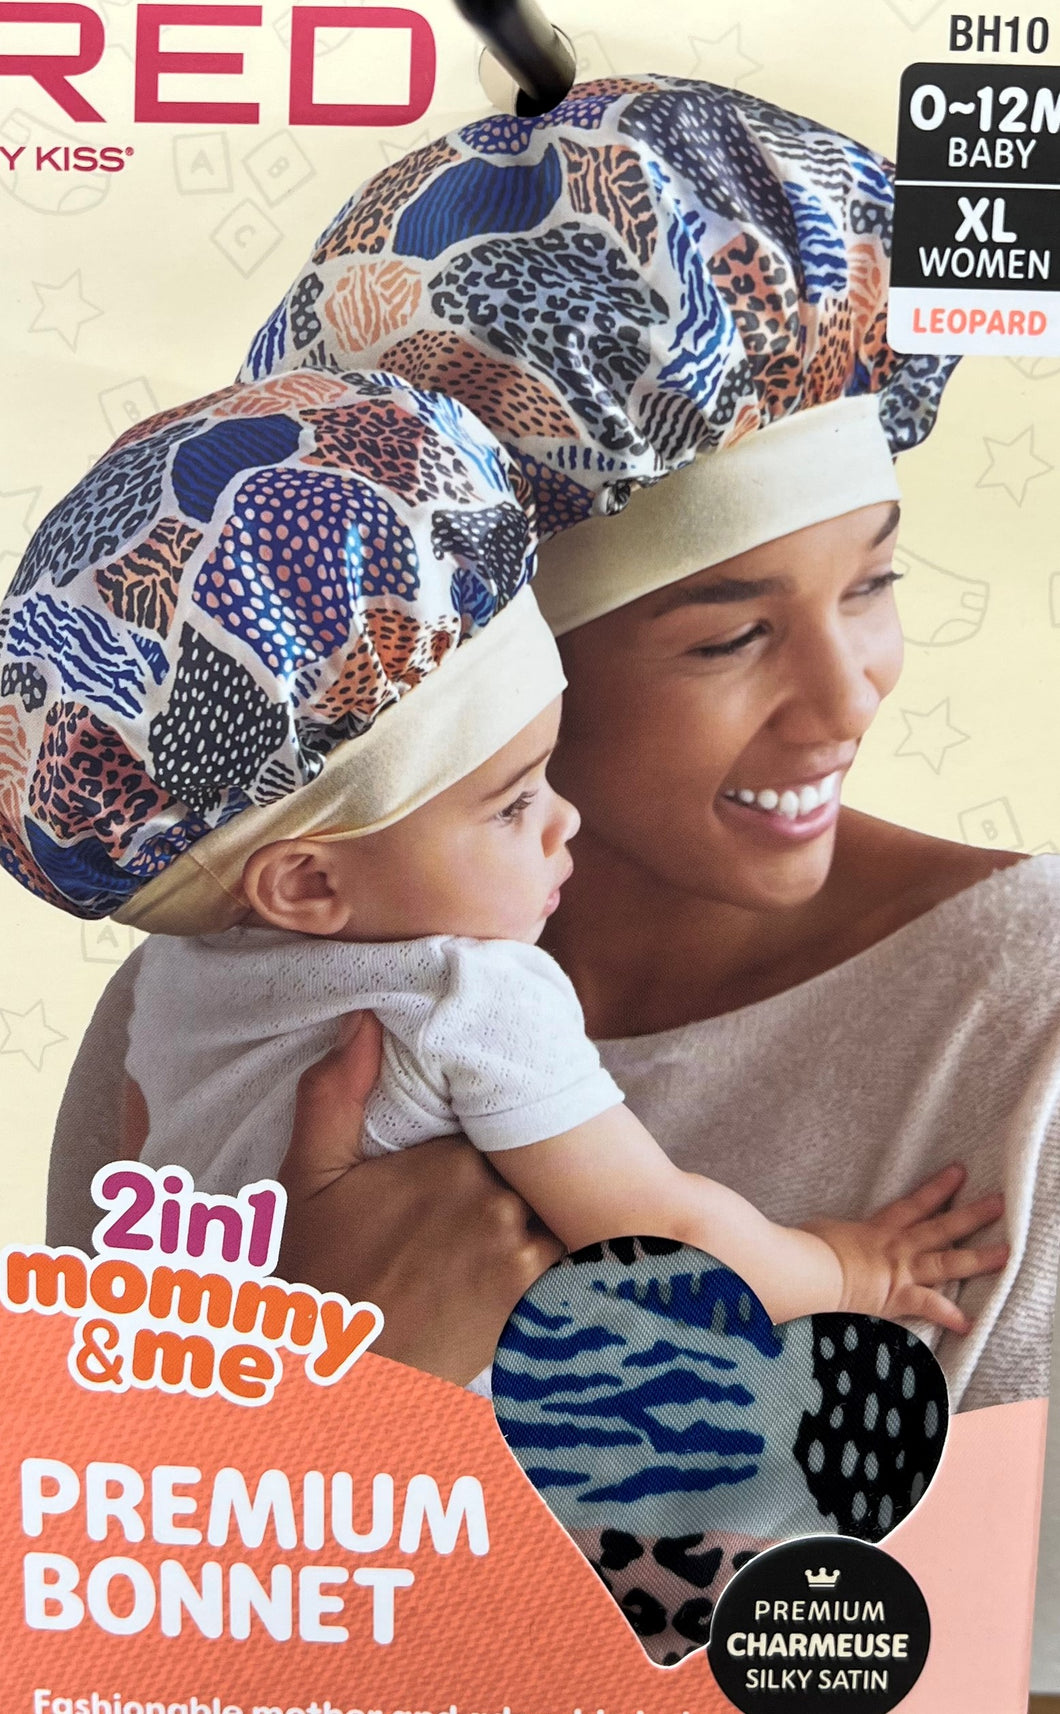 2in1 Mommy & Me Bonnet